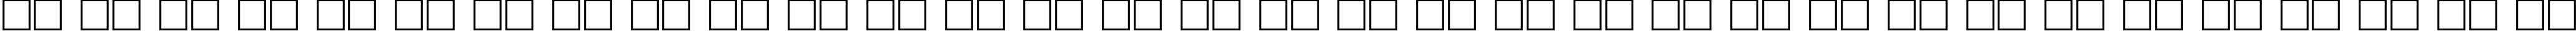 Пример написания русского алфавита шрифтом Everest-Ultra